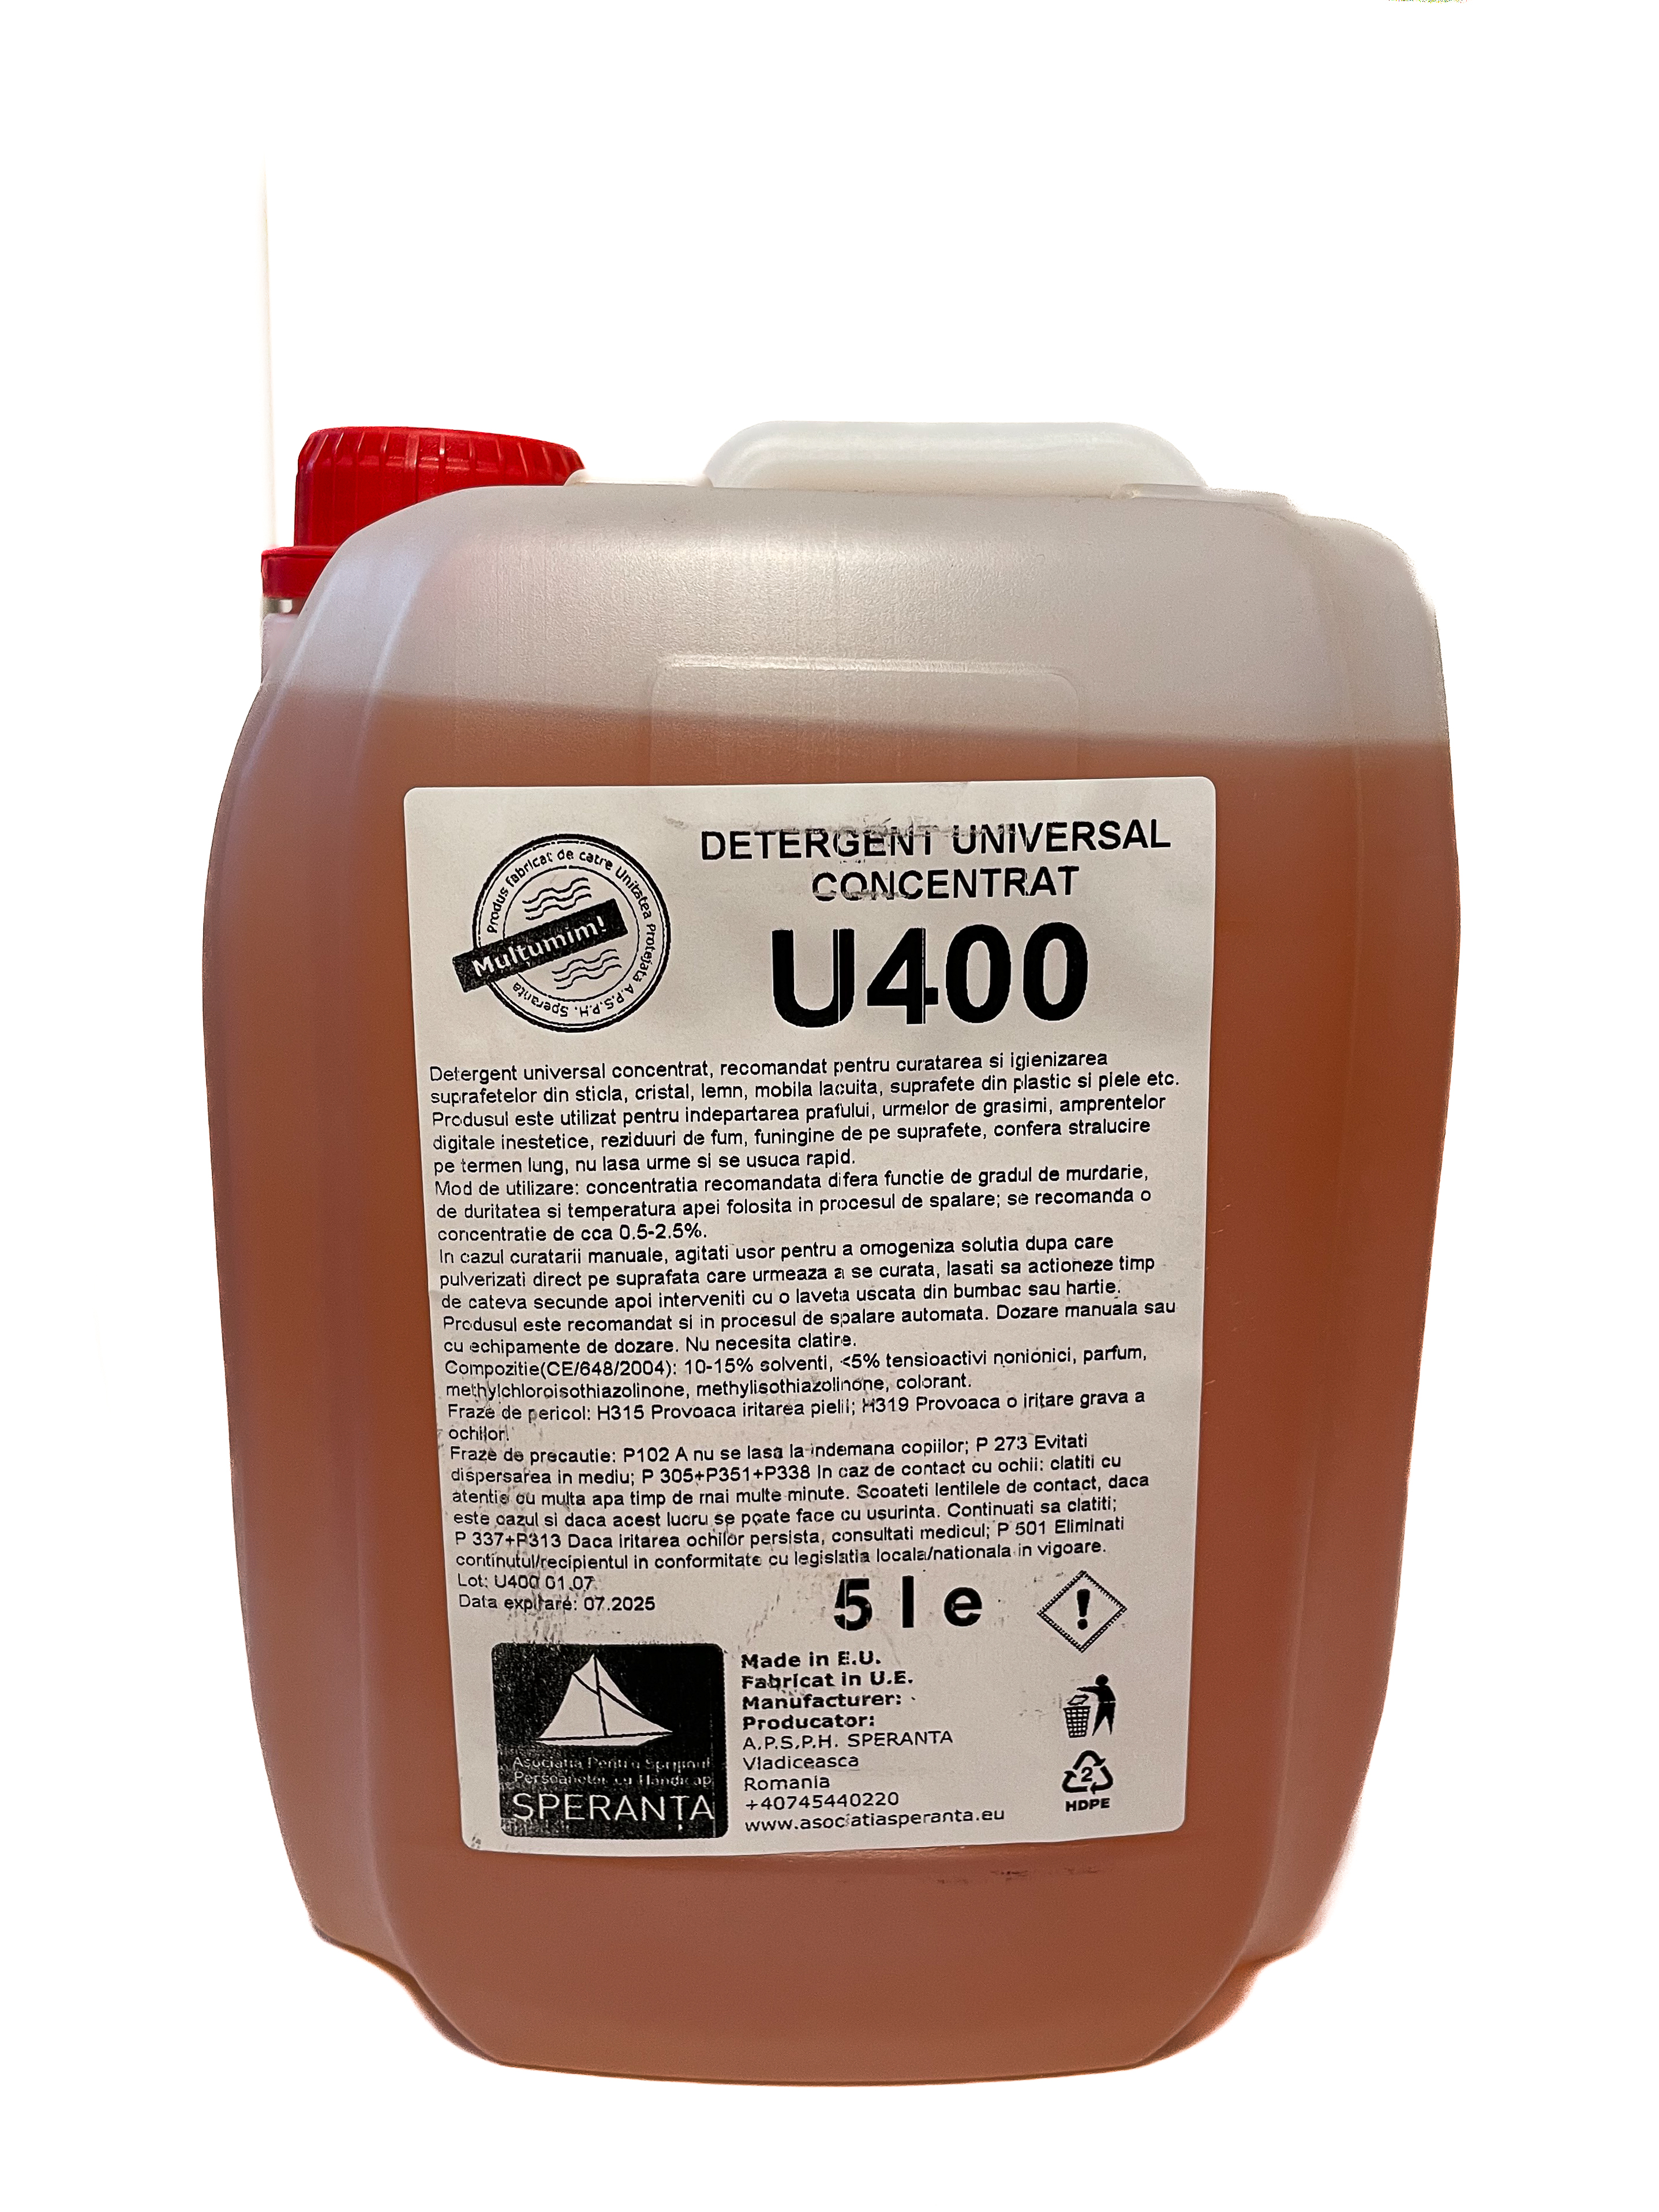 Detergent universal concentrat U400 5000ml [5 LITRI]